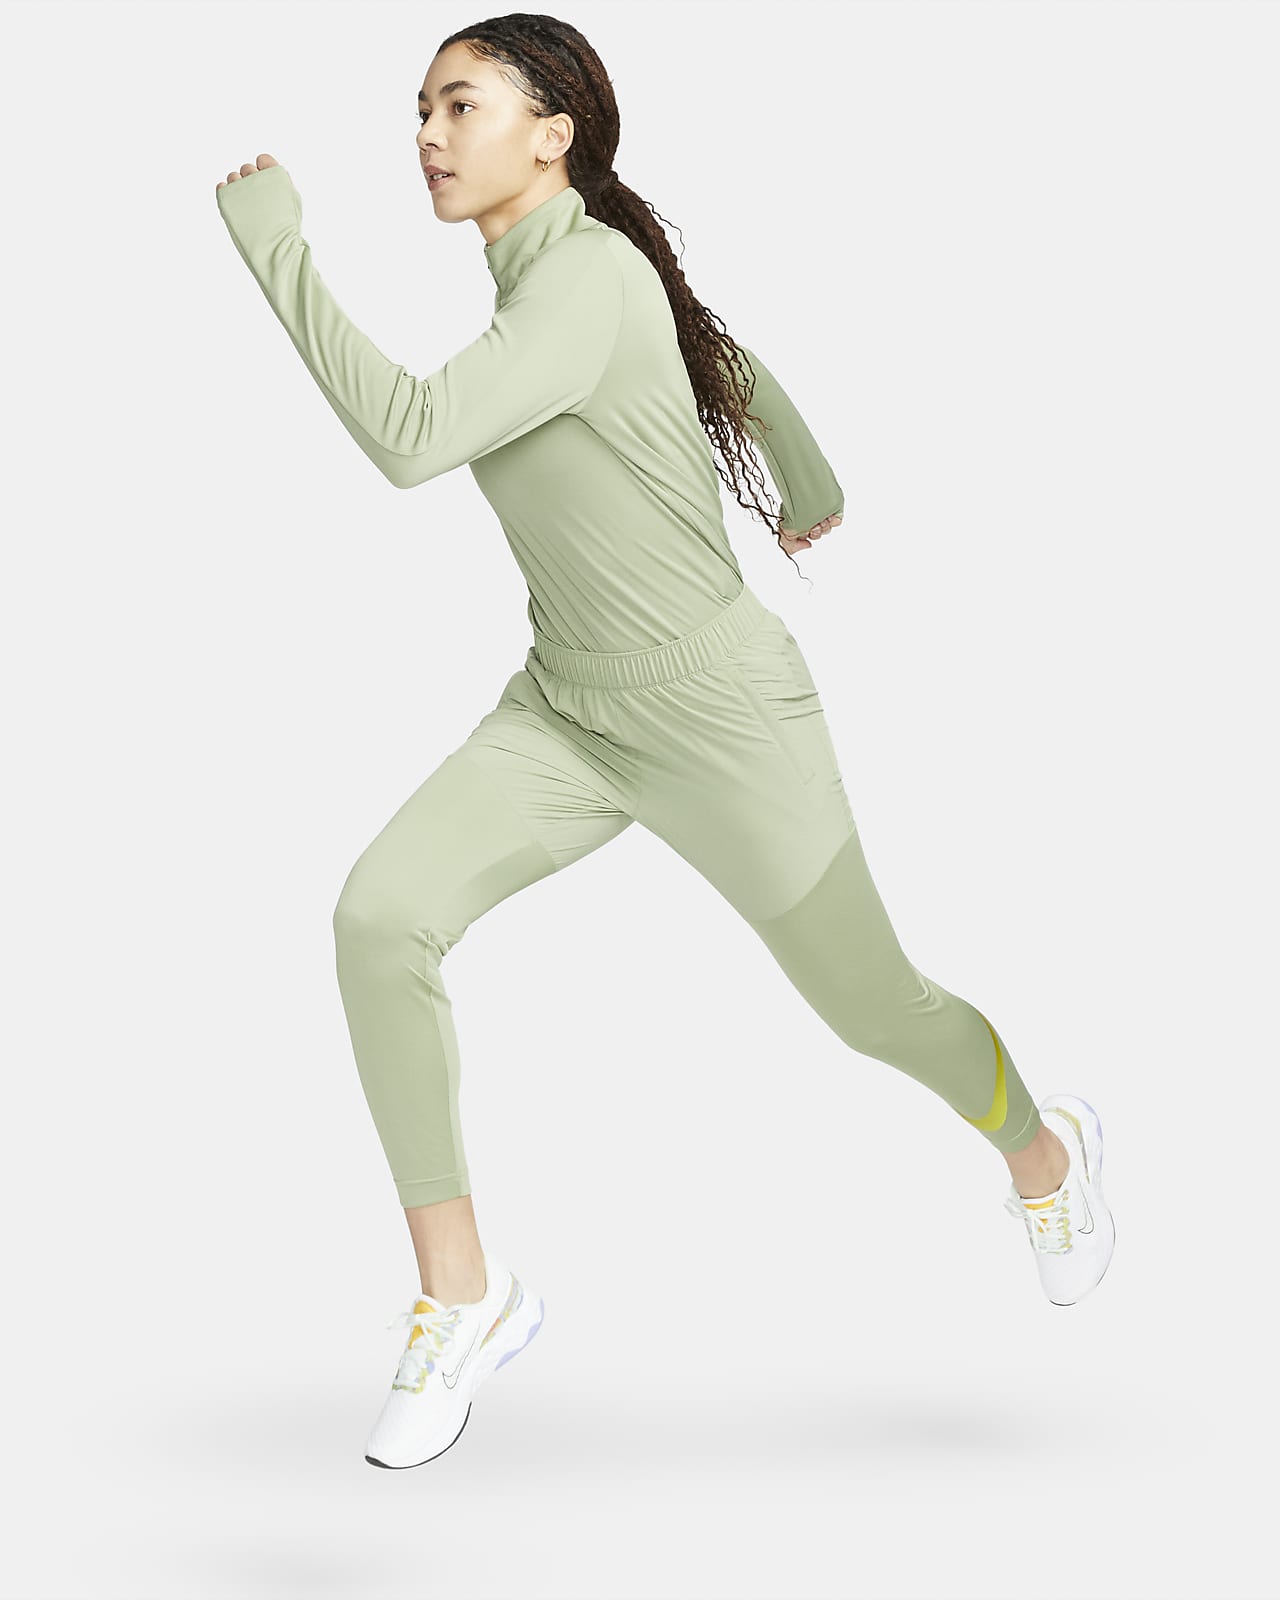 Nike Swoosh Run Women’s Running Crew